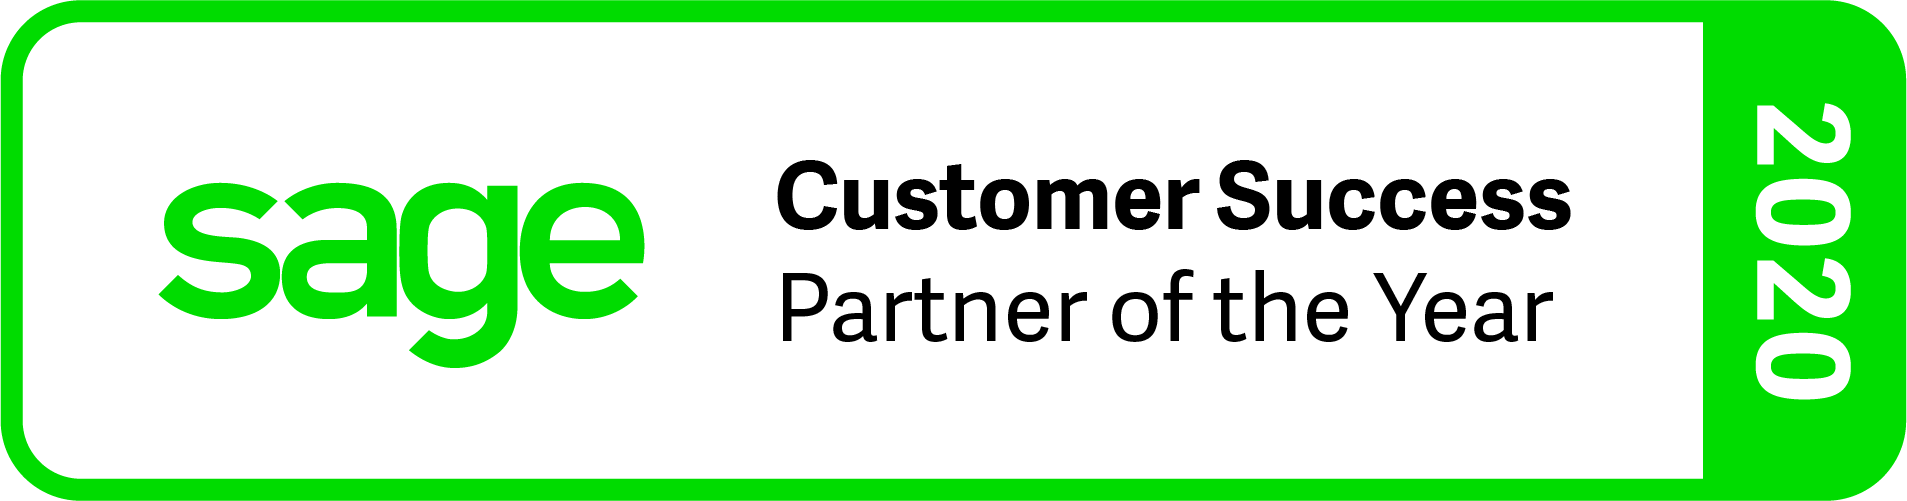 Customer Success Partner 2020